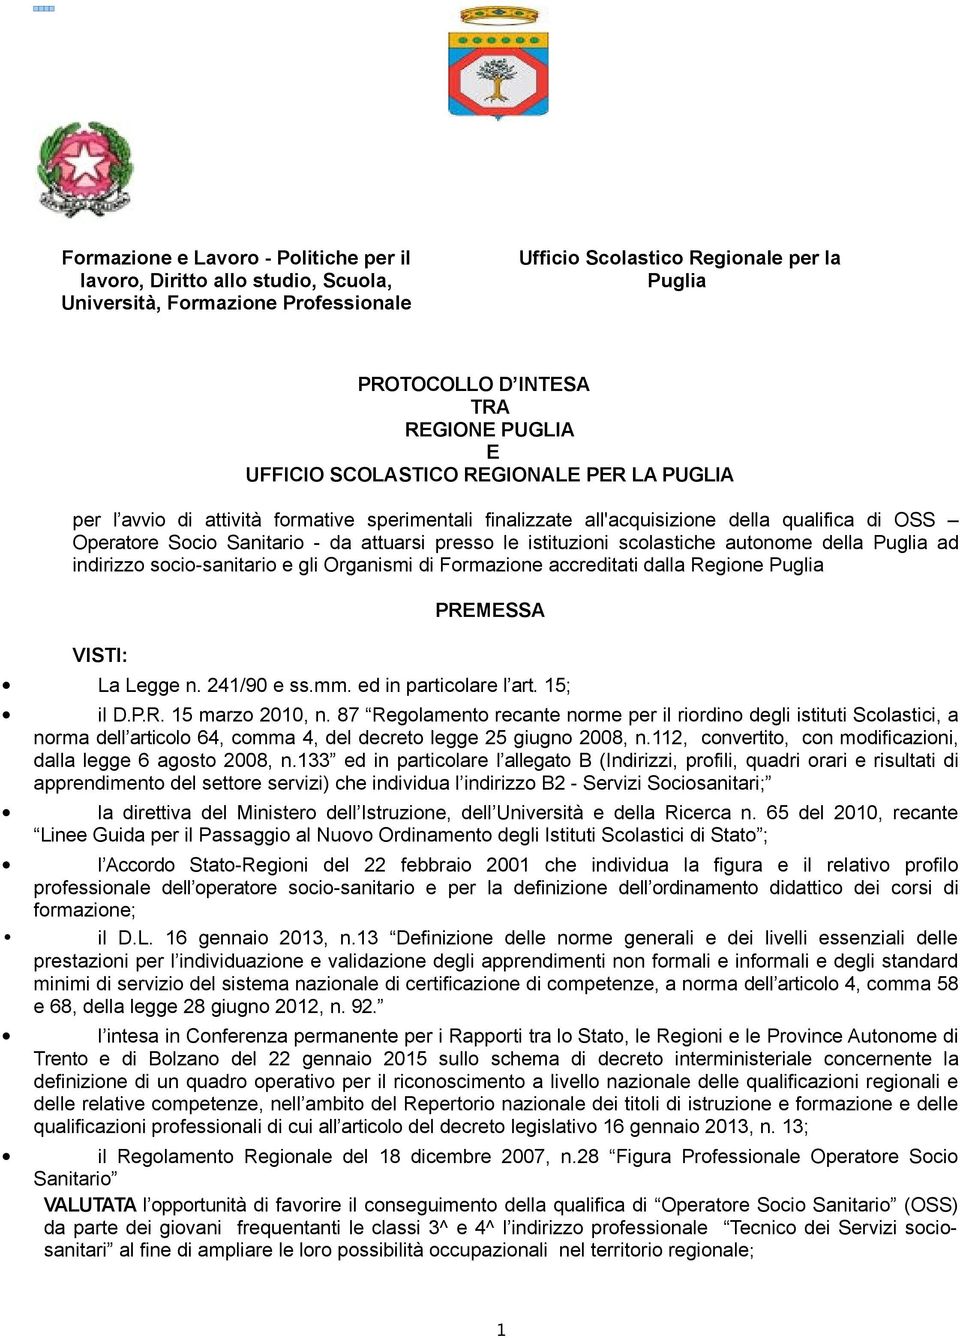 istituzioni scolastiche autonome della Puglia ad indirizzo socio-sanitario e gli Organismi di Formazione accreditati dalla Regione Puglia VISTI: PREMESSA La Legge n. 241/90 e ss.mm.